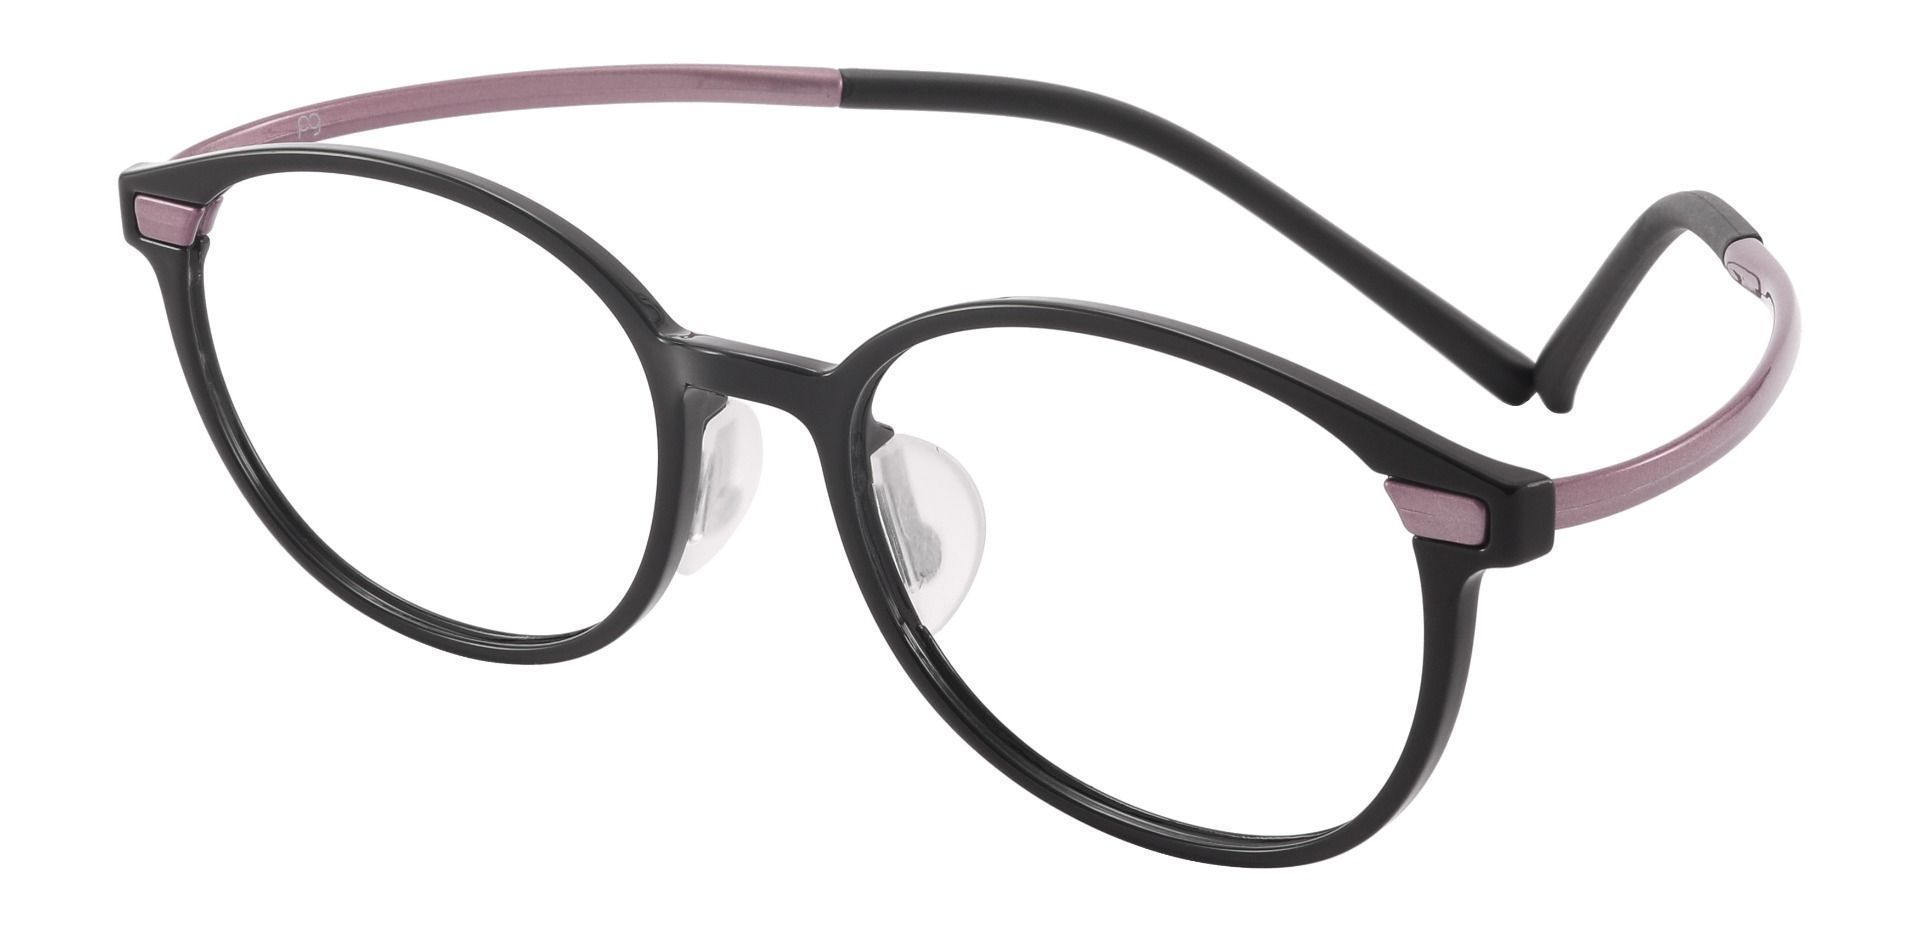 Dawes Oval Prescription Glasses - Pink